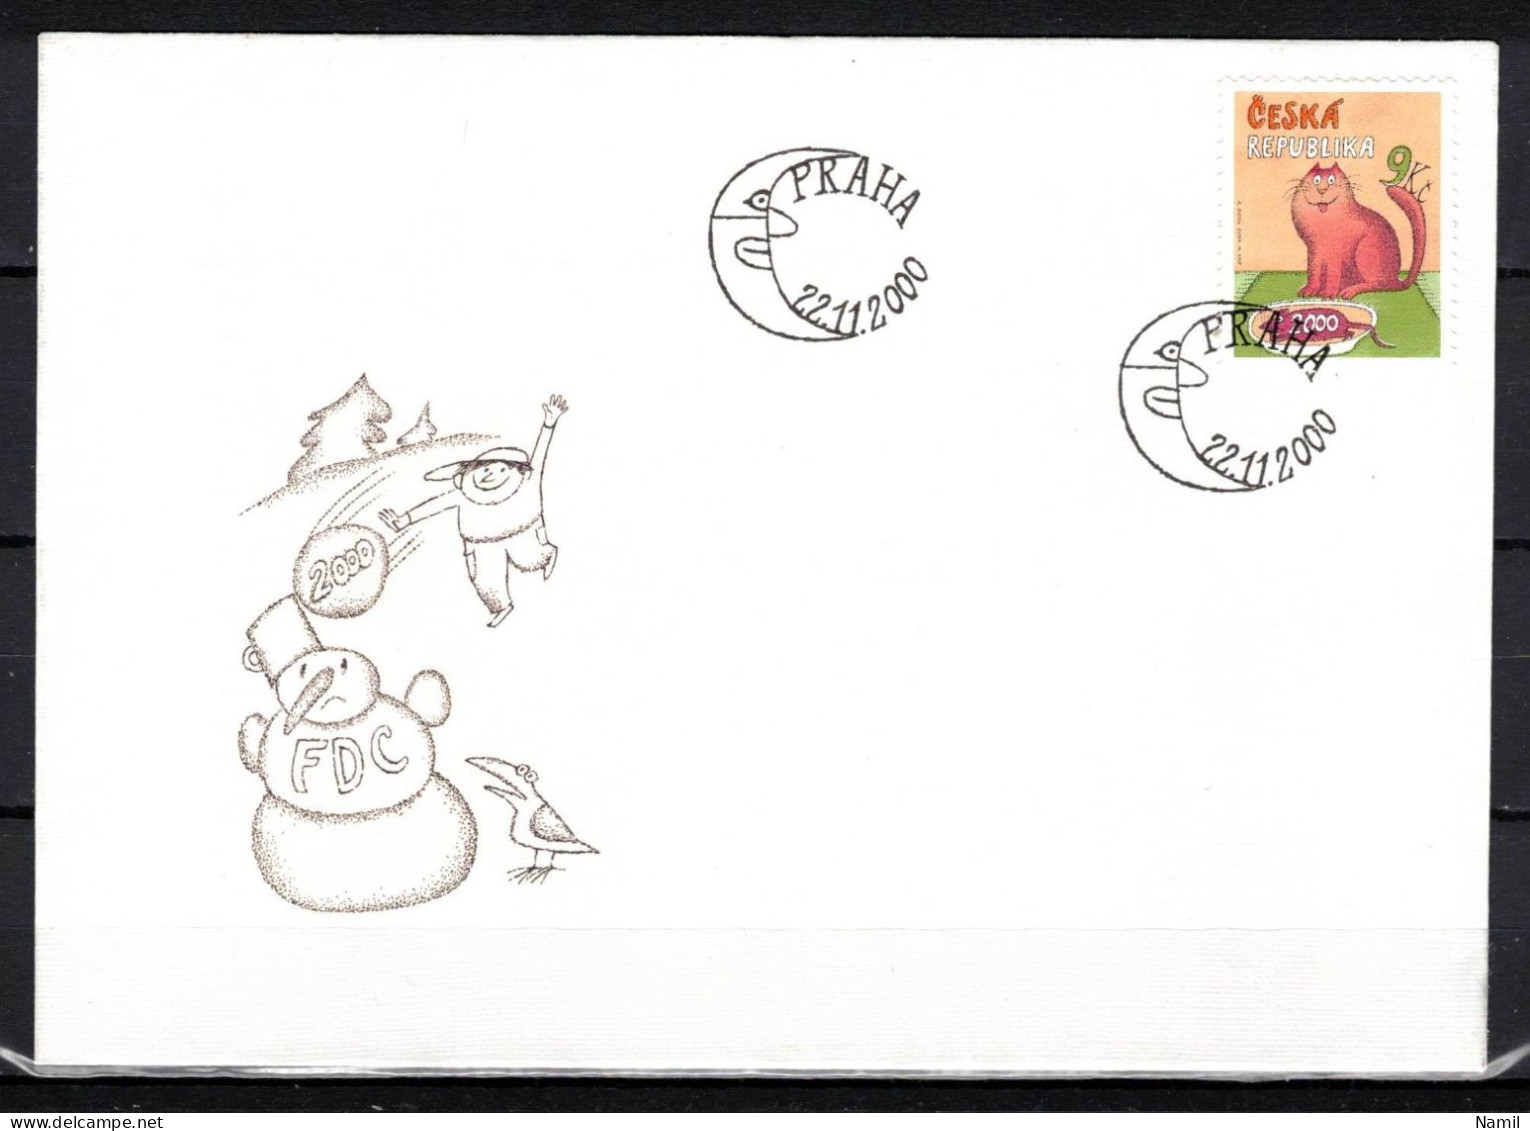 Tchéque République 2000 Mi 278, Envelope Premier Jour - FDC